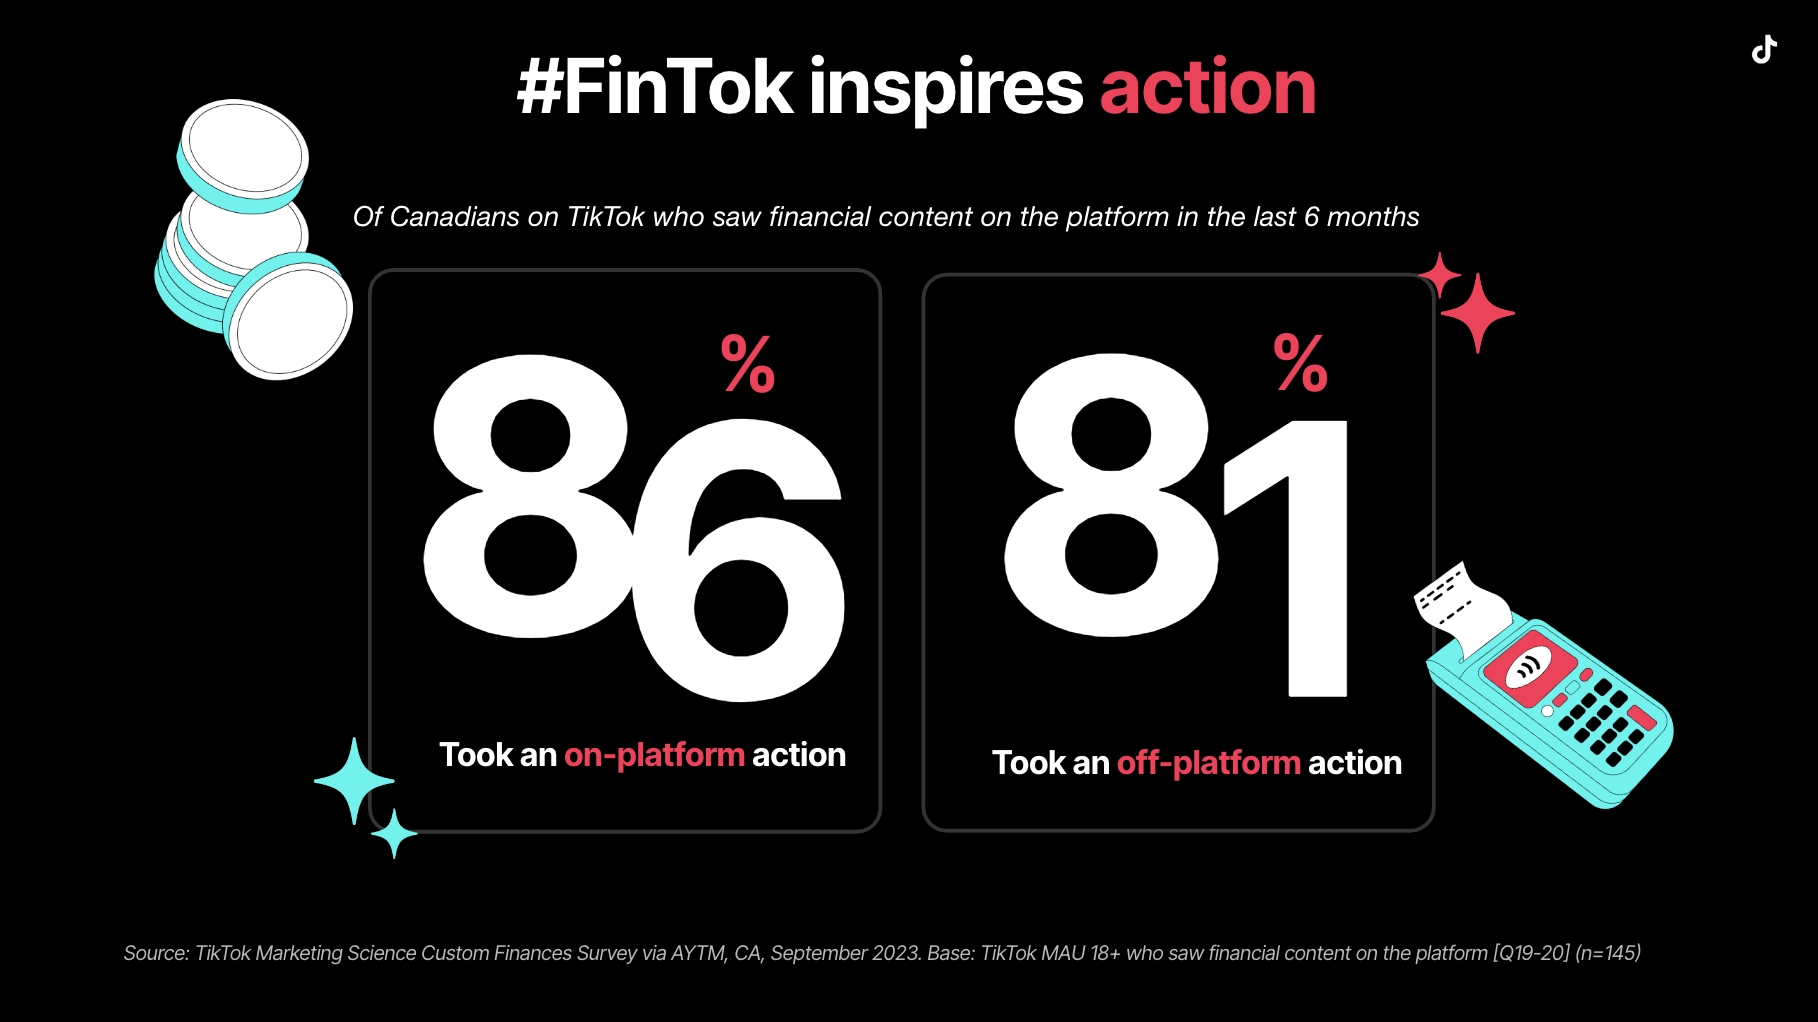 FinTok inspires action